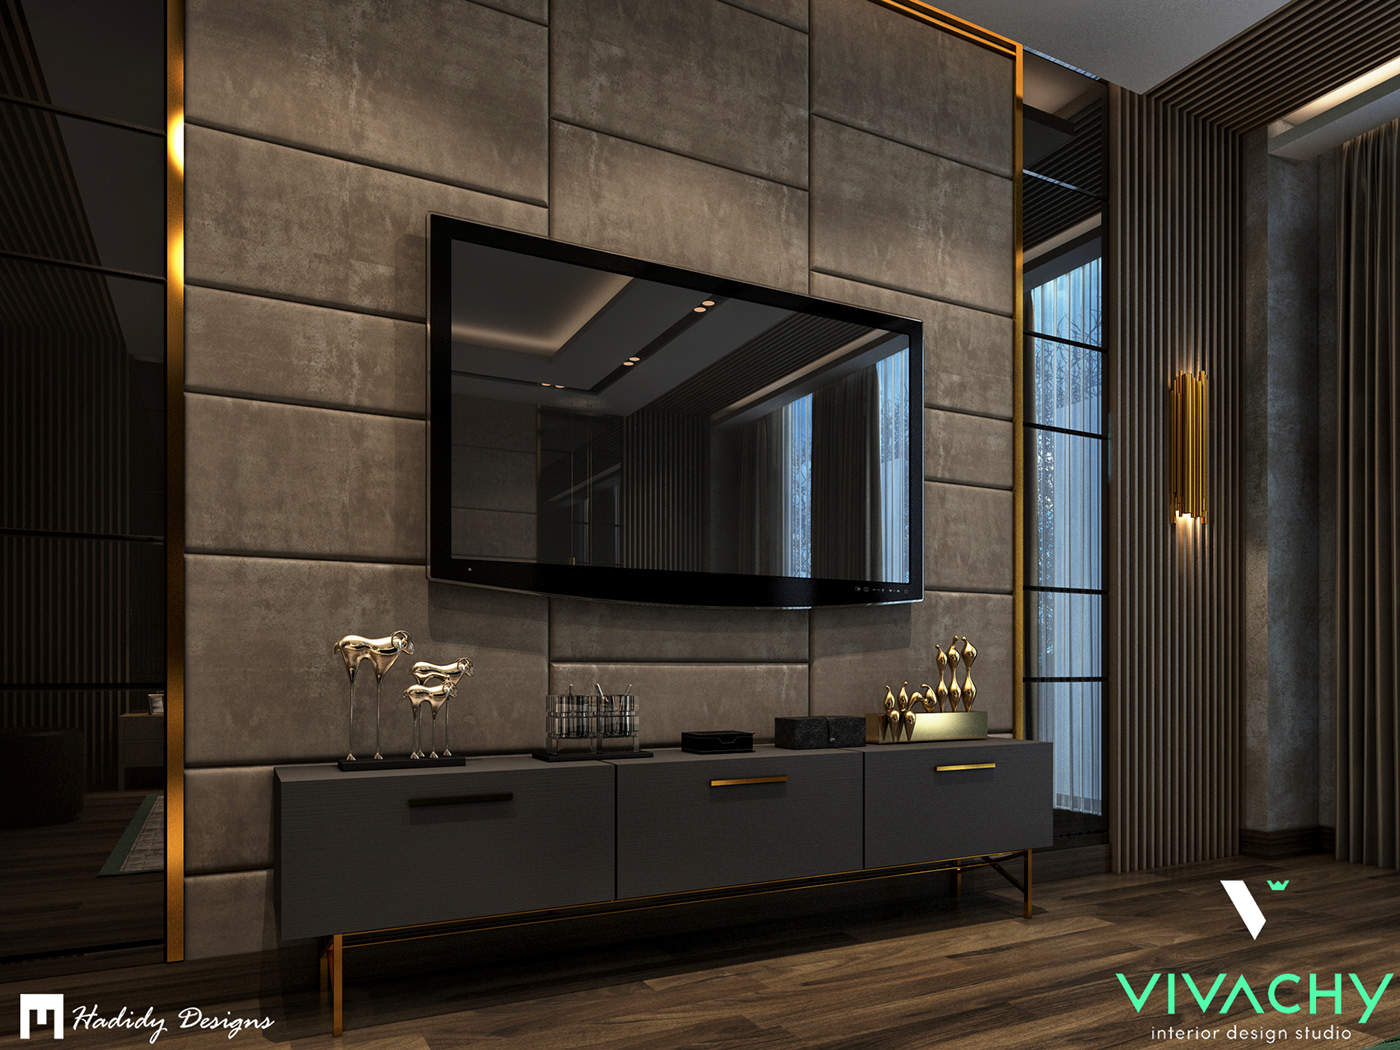 architecture interior design  art visualization furniture design  visual art artist design 3dmax vray